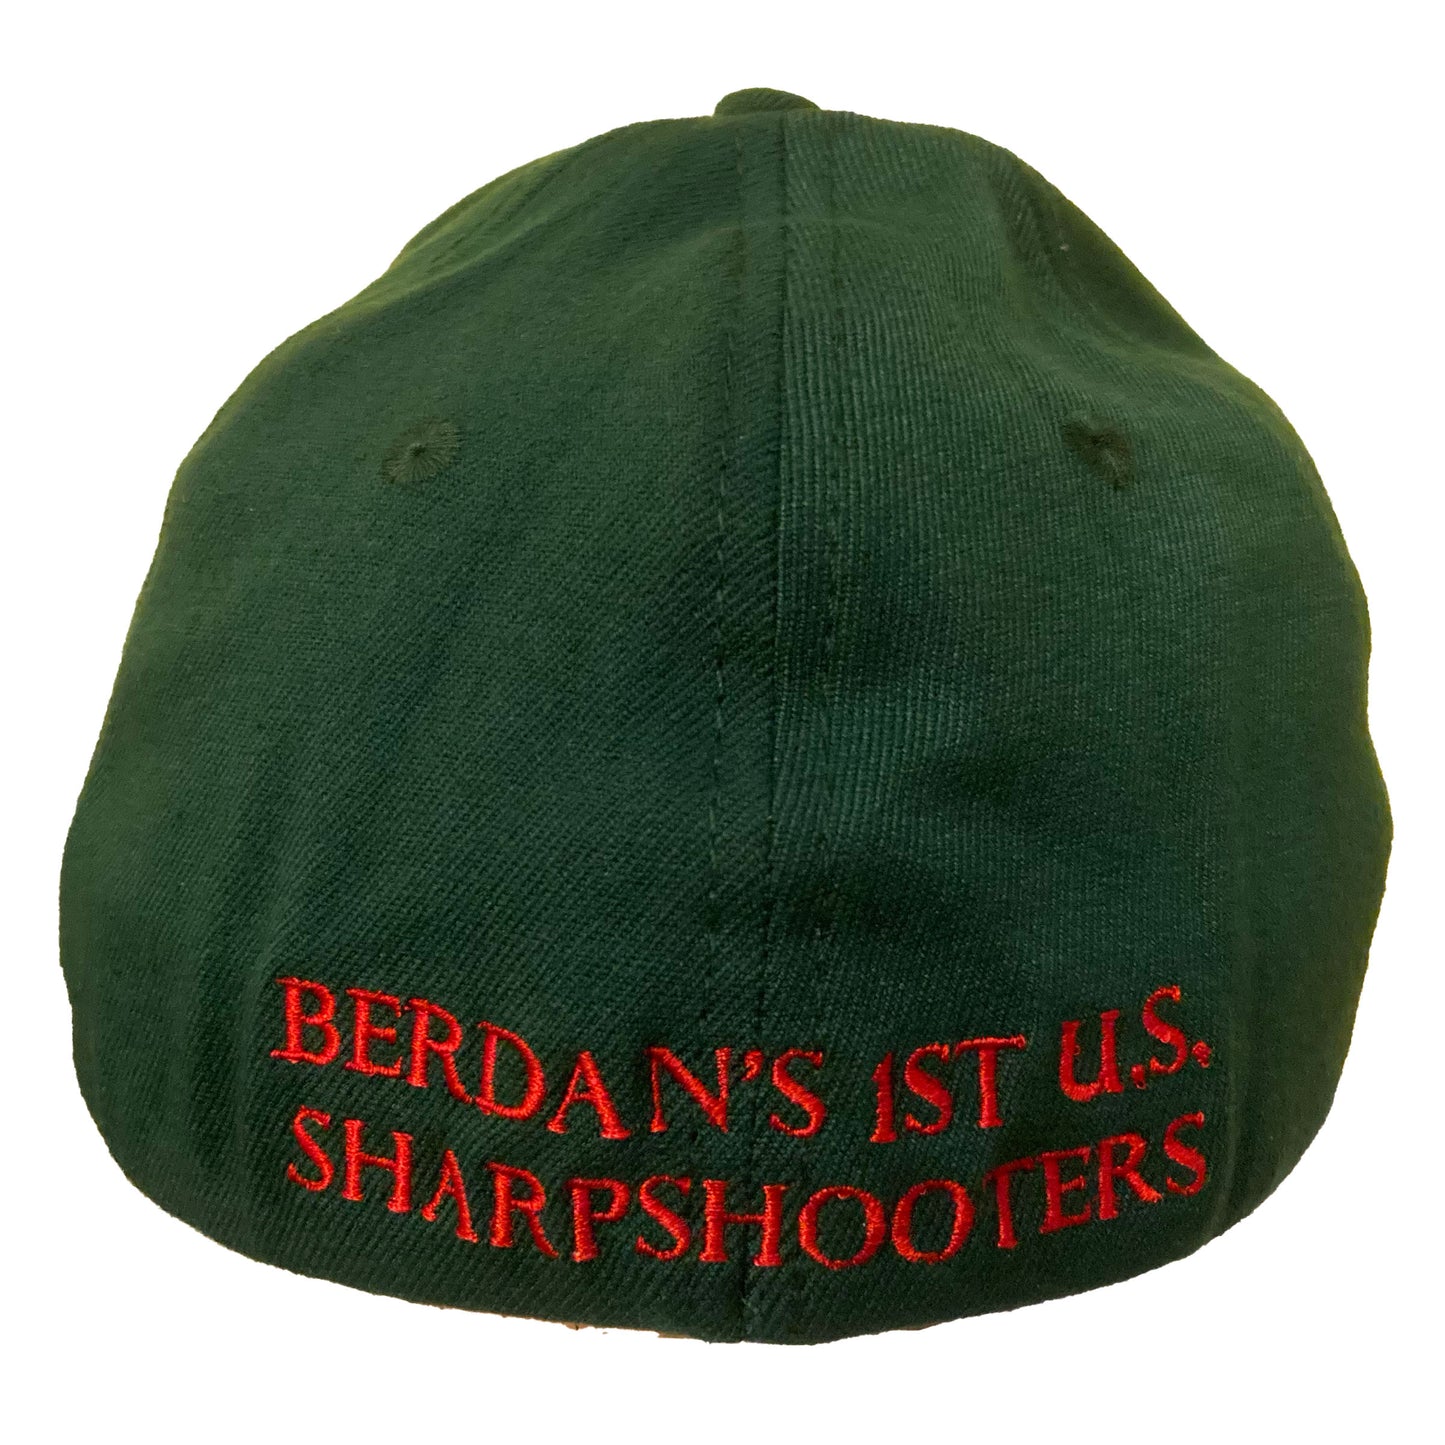 Berdans’s 1st US Sharpshooters Wool Blend Flex Fit Baseball Cap